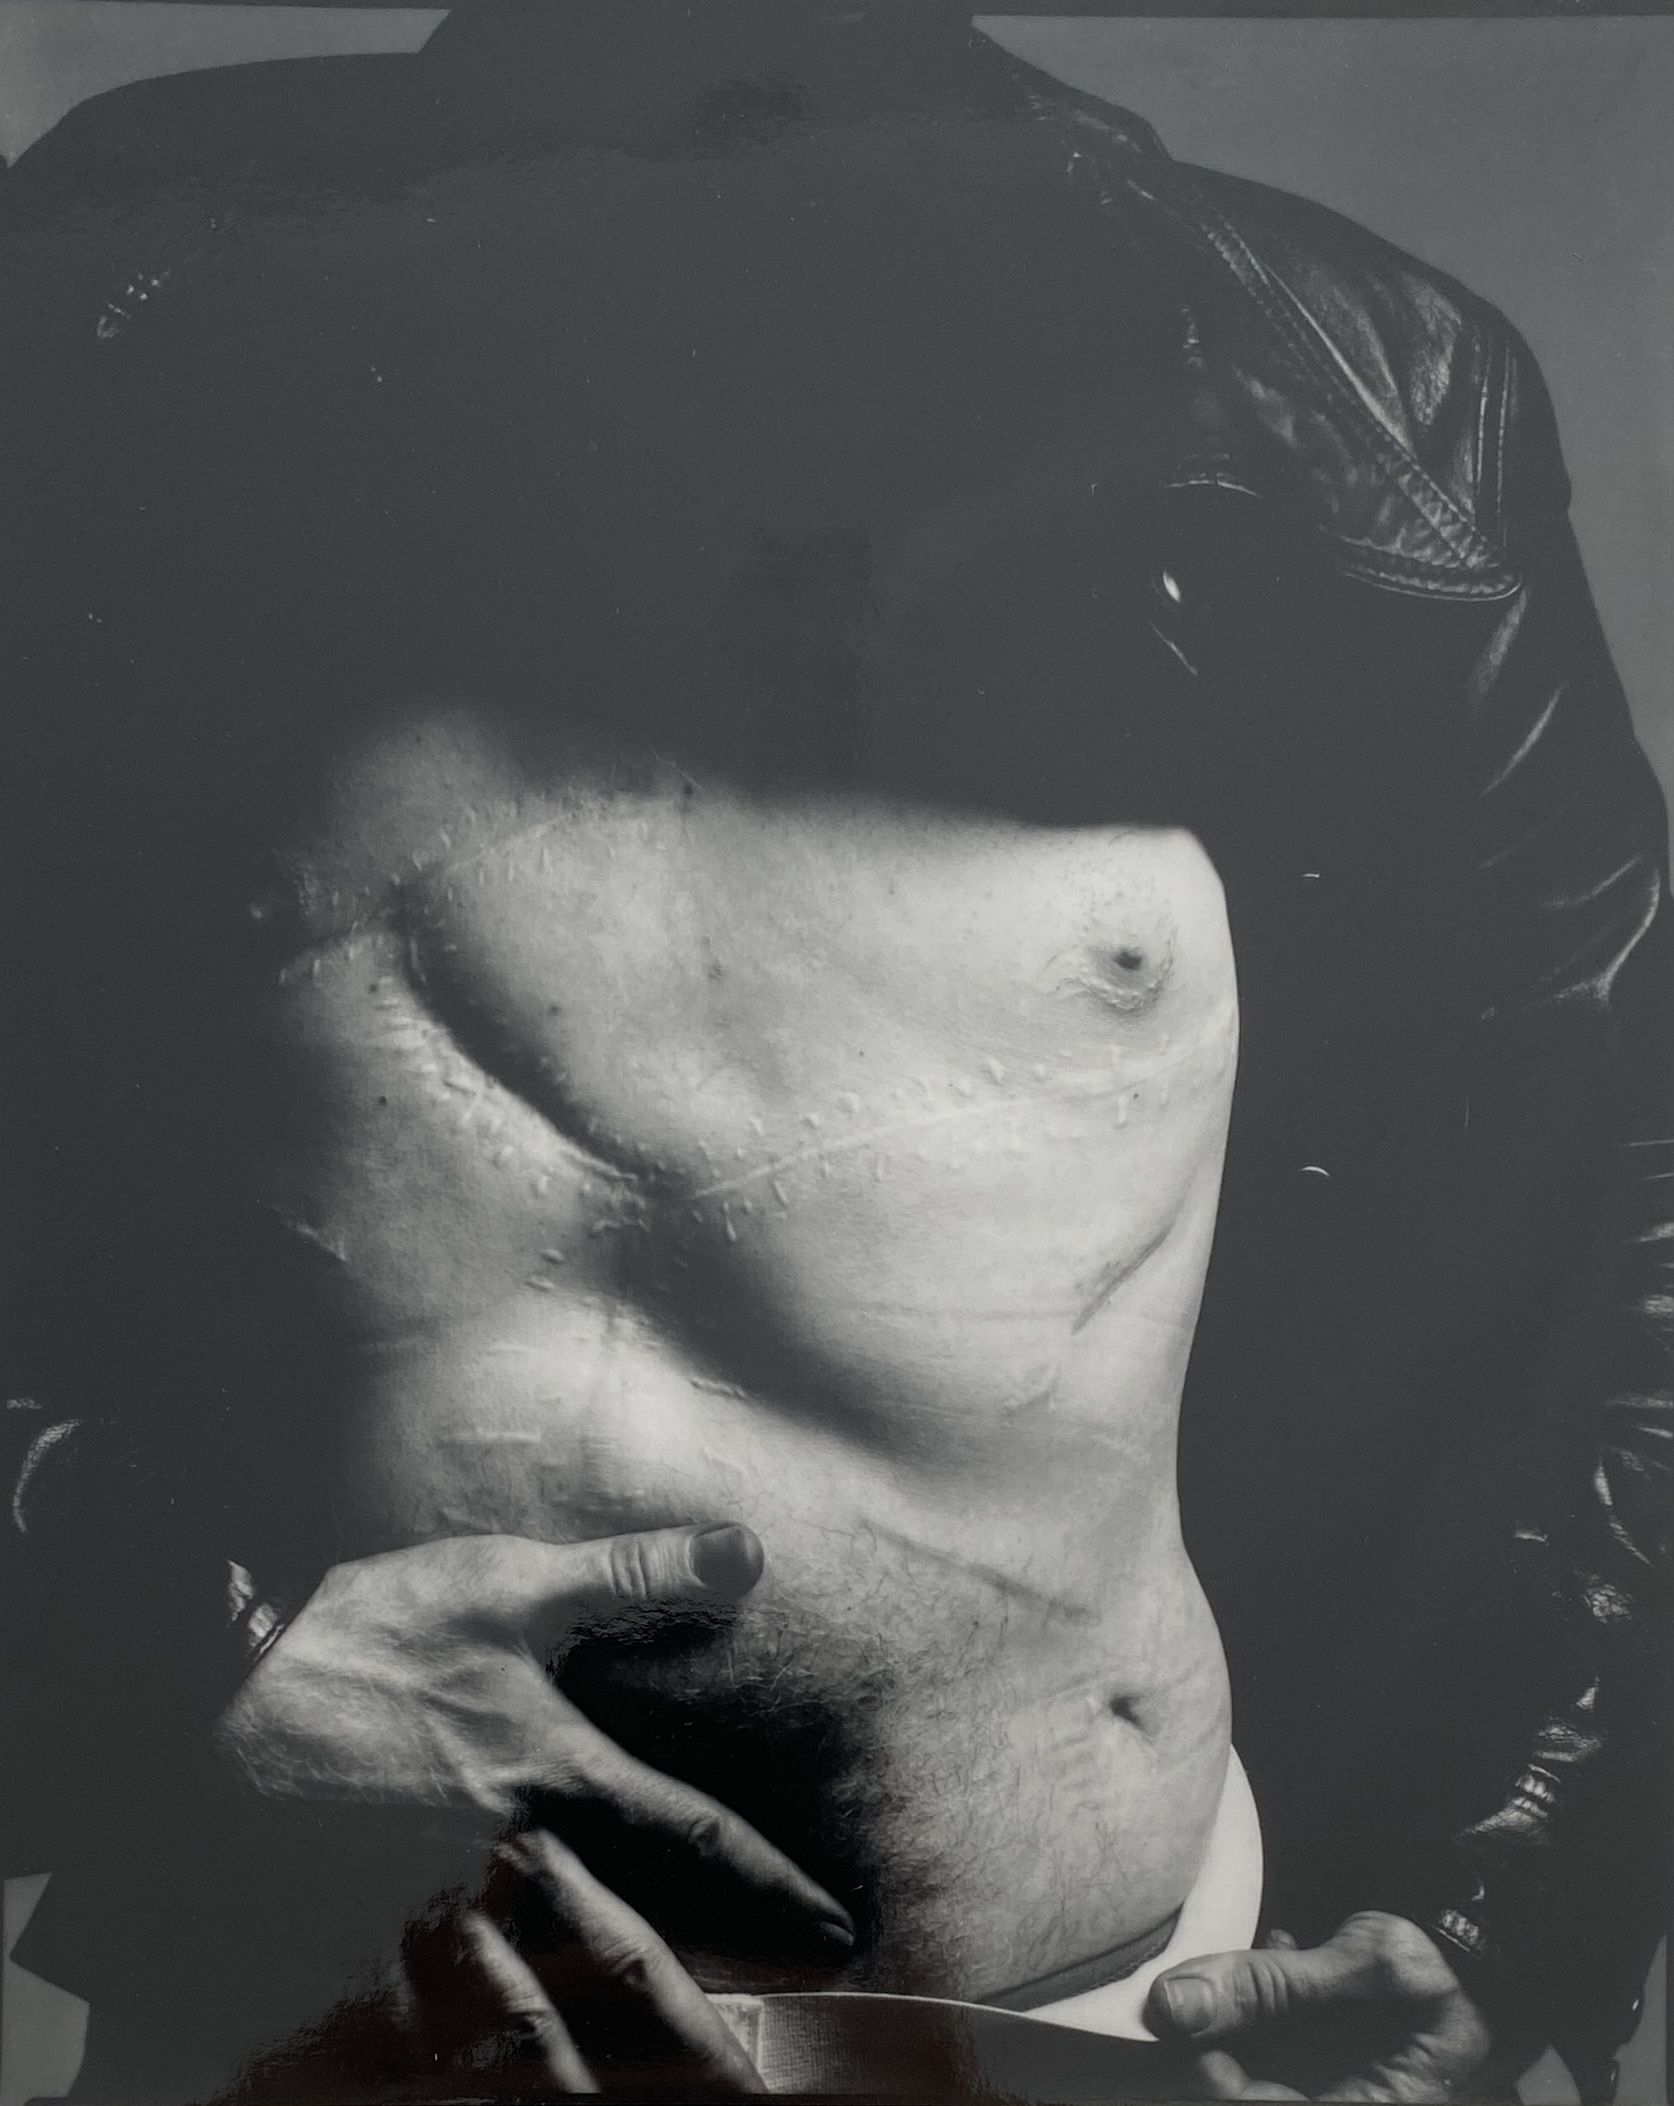 Richard Avedon - Andy Warhol, 1969